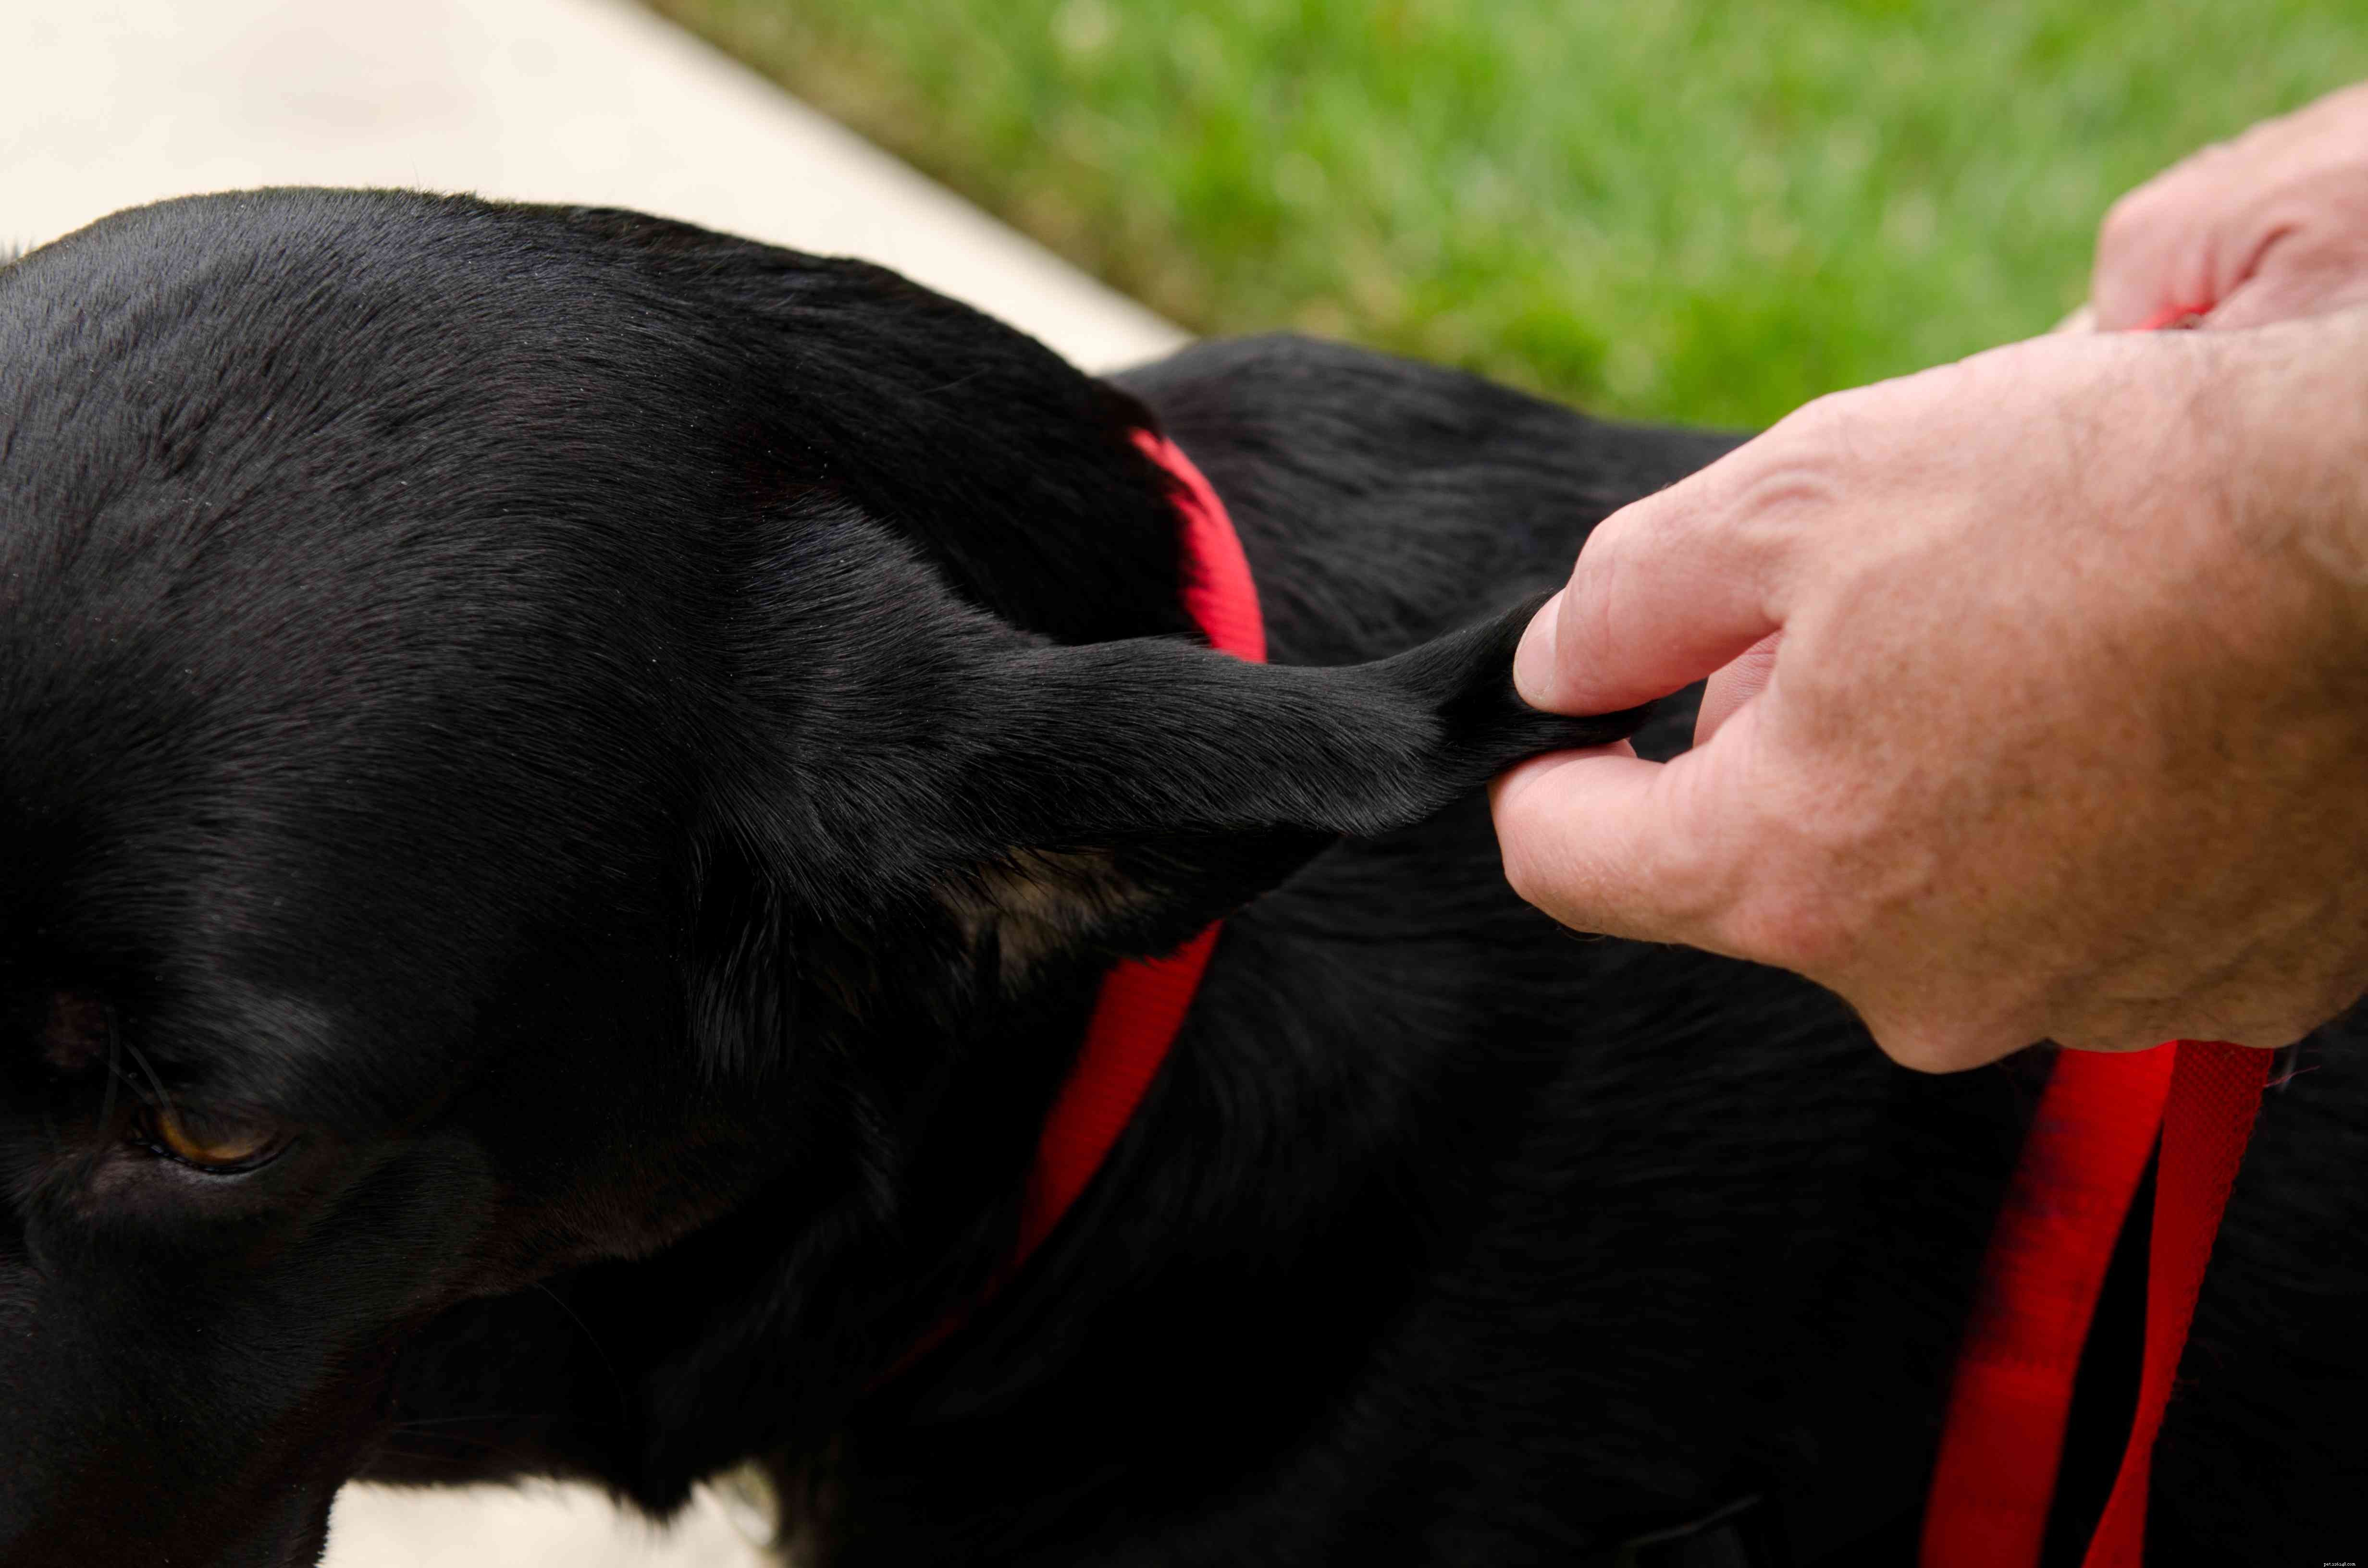 Veelvoorkomende oorproblemen bij honden